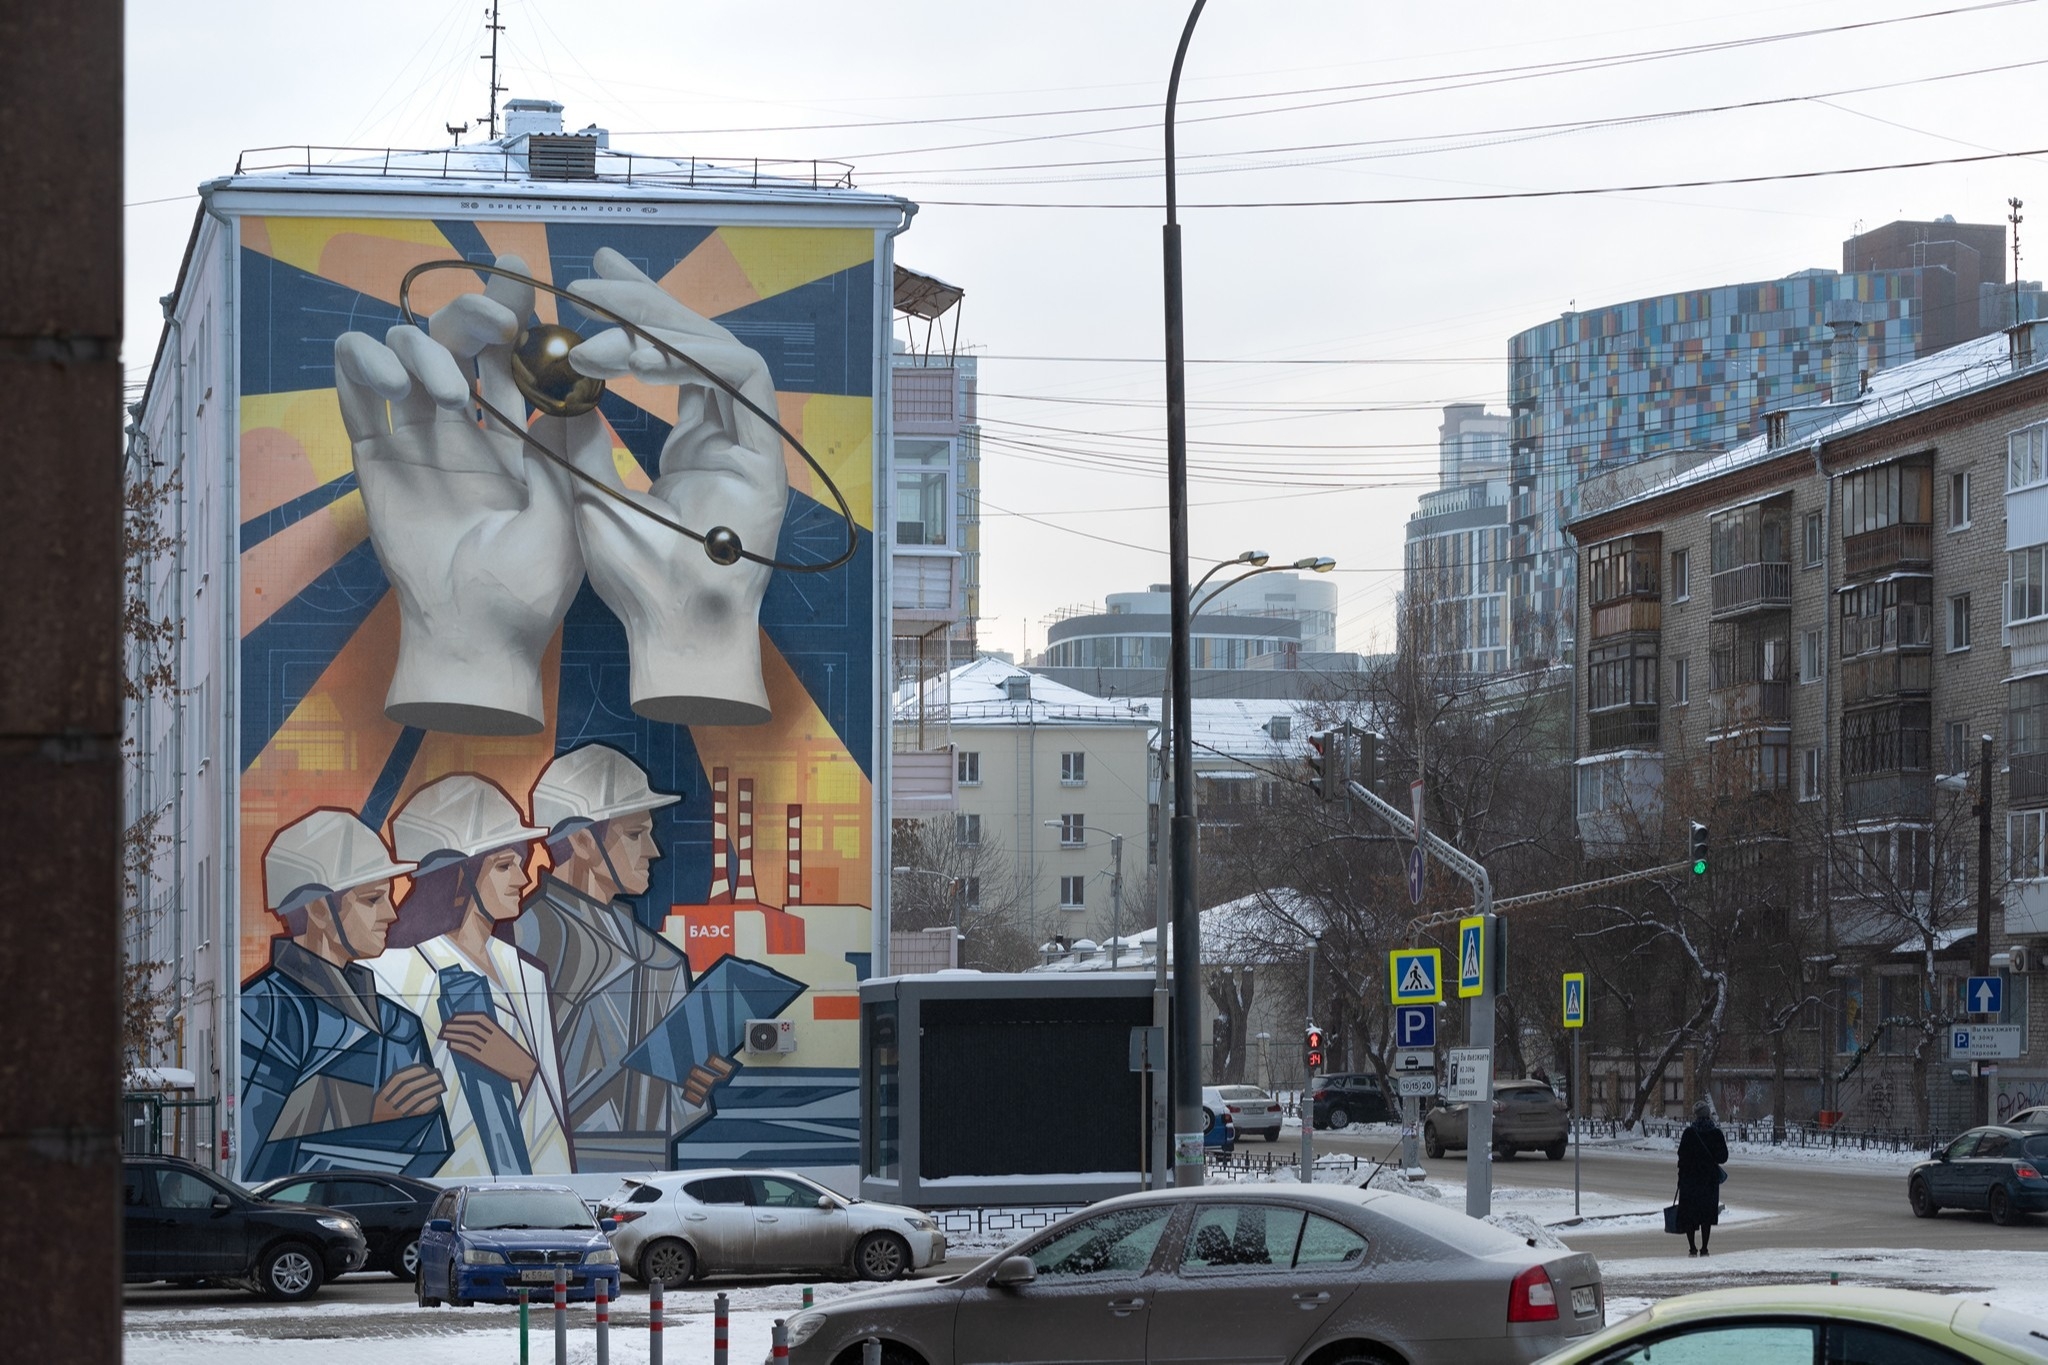 Арт-объект на тему мирного атома появился на стене одного из домов в Екатеринбурге